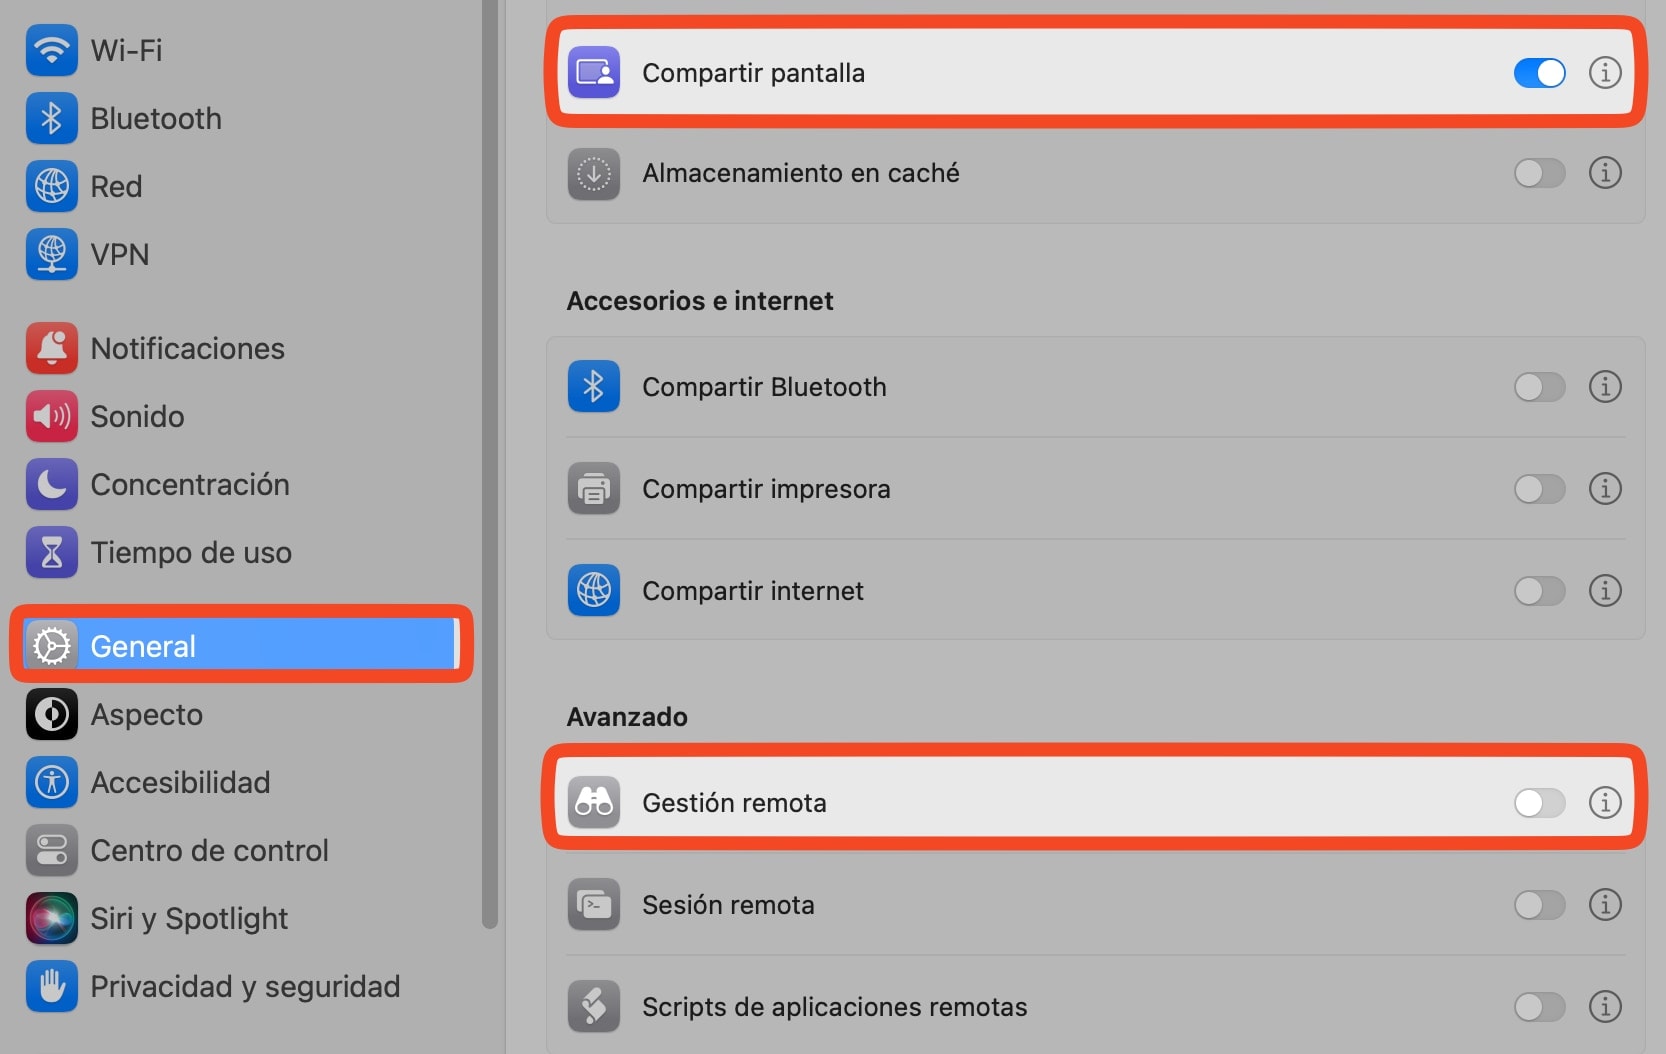 Compartir pantalla y gestión de RED en macOS para permitir acceso remoto con la red Mesh de NordVPN